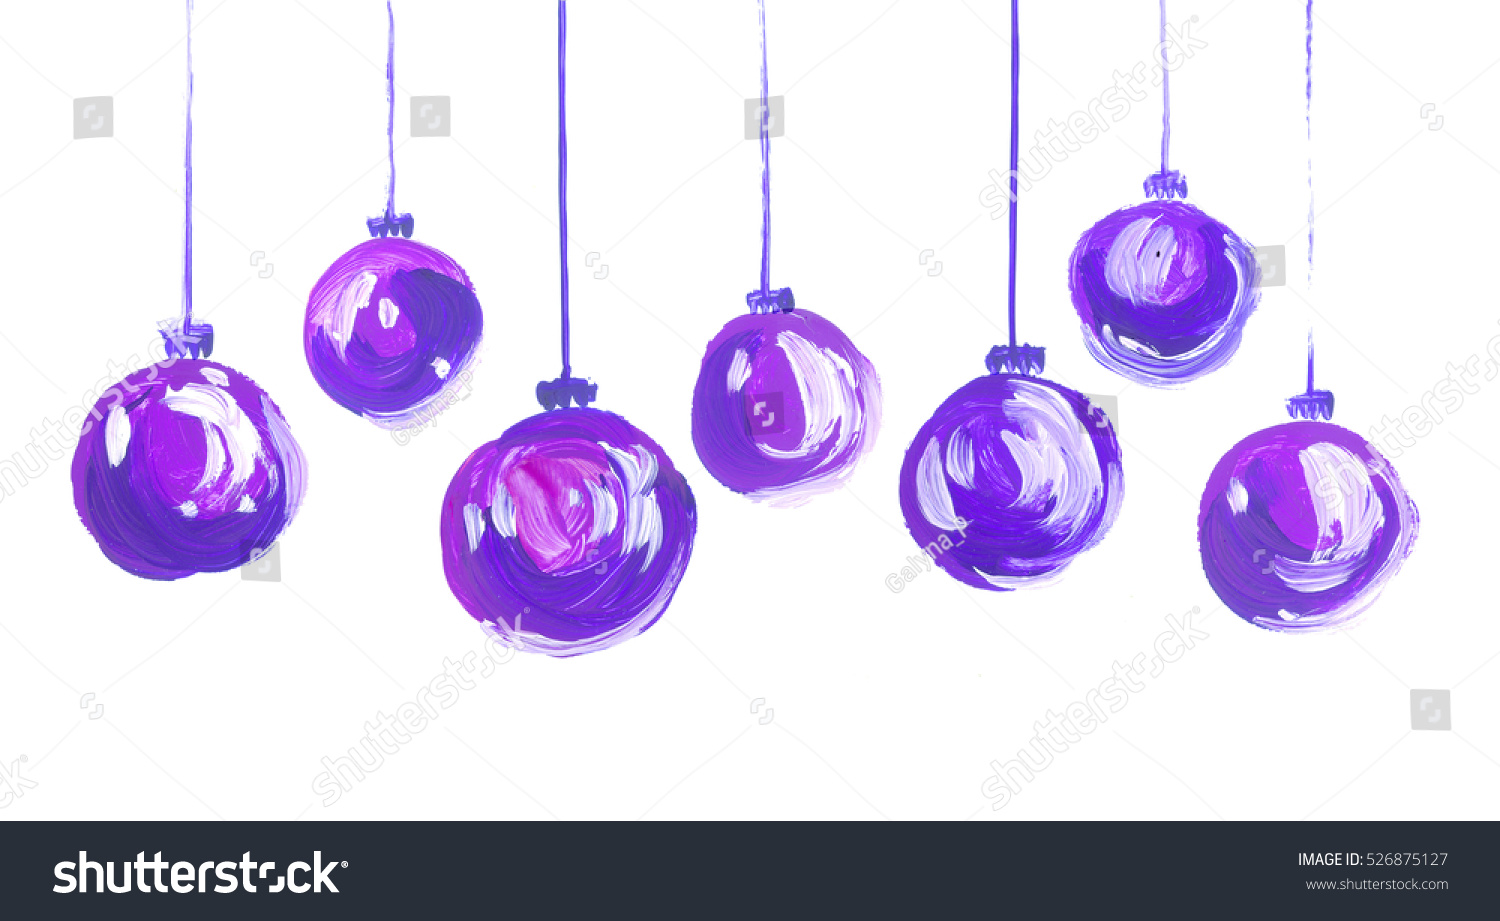 acrylic christmas balls